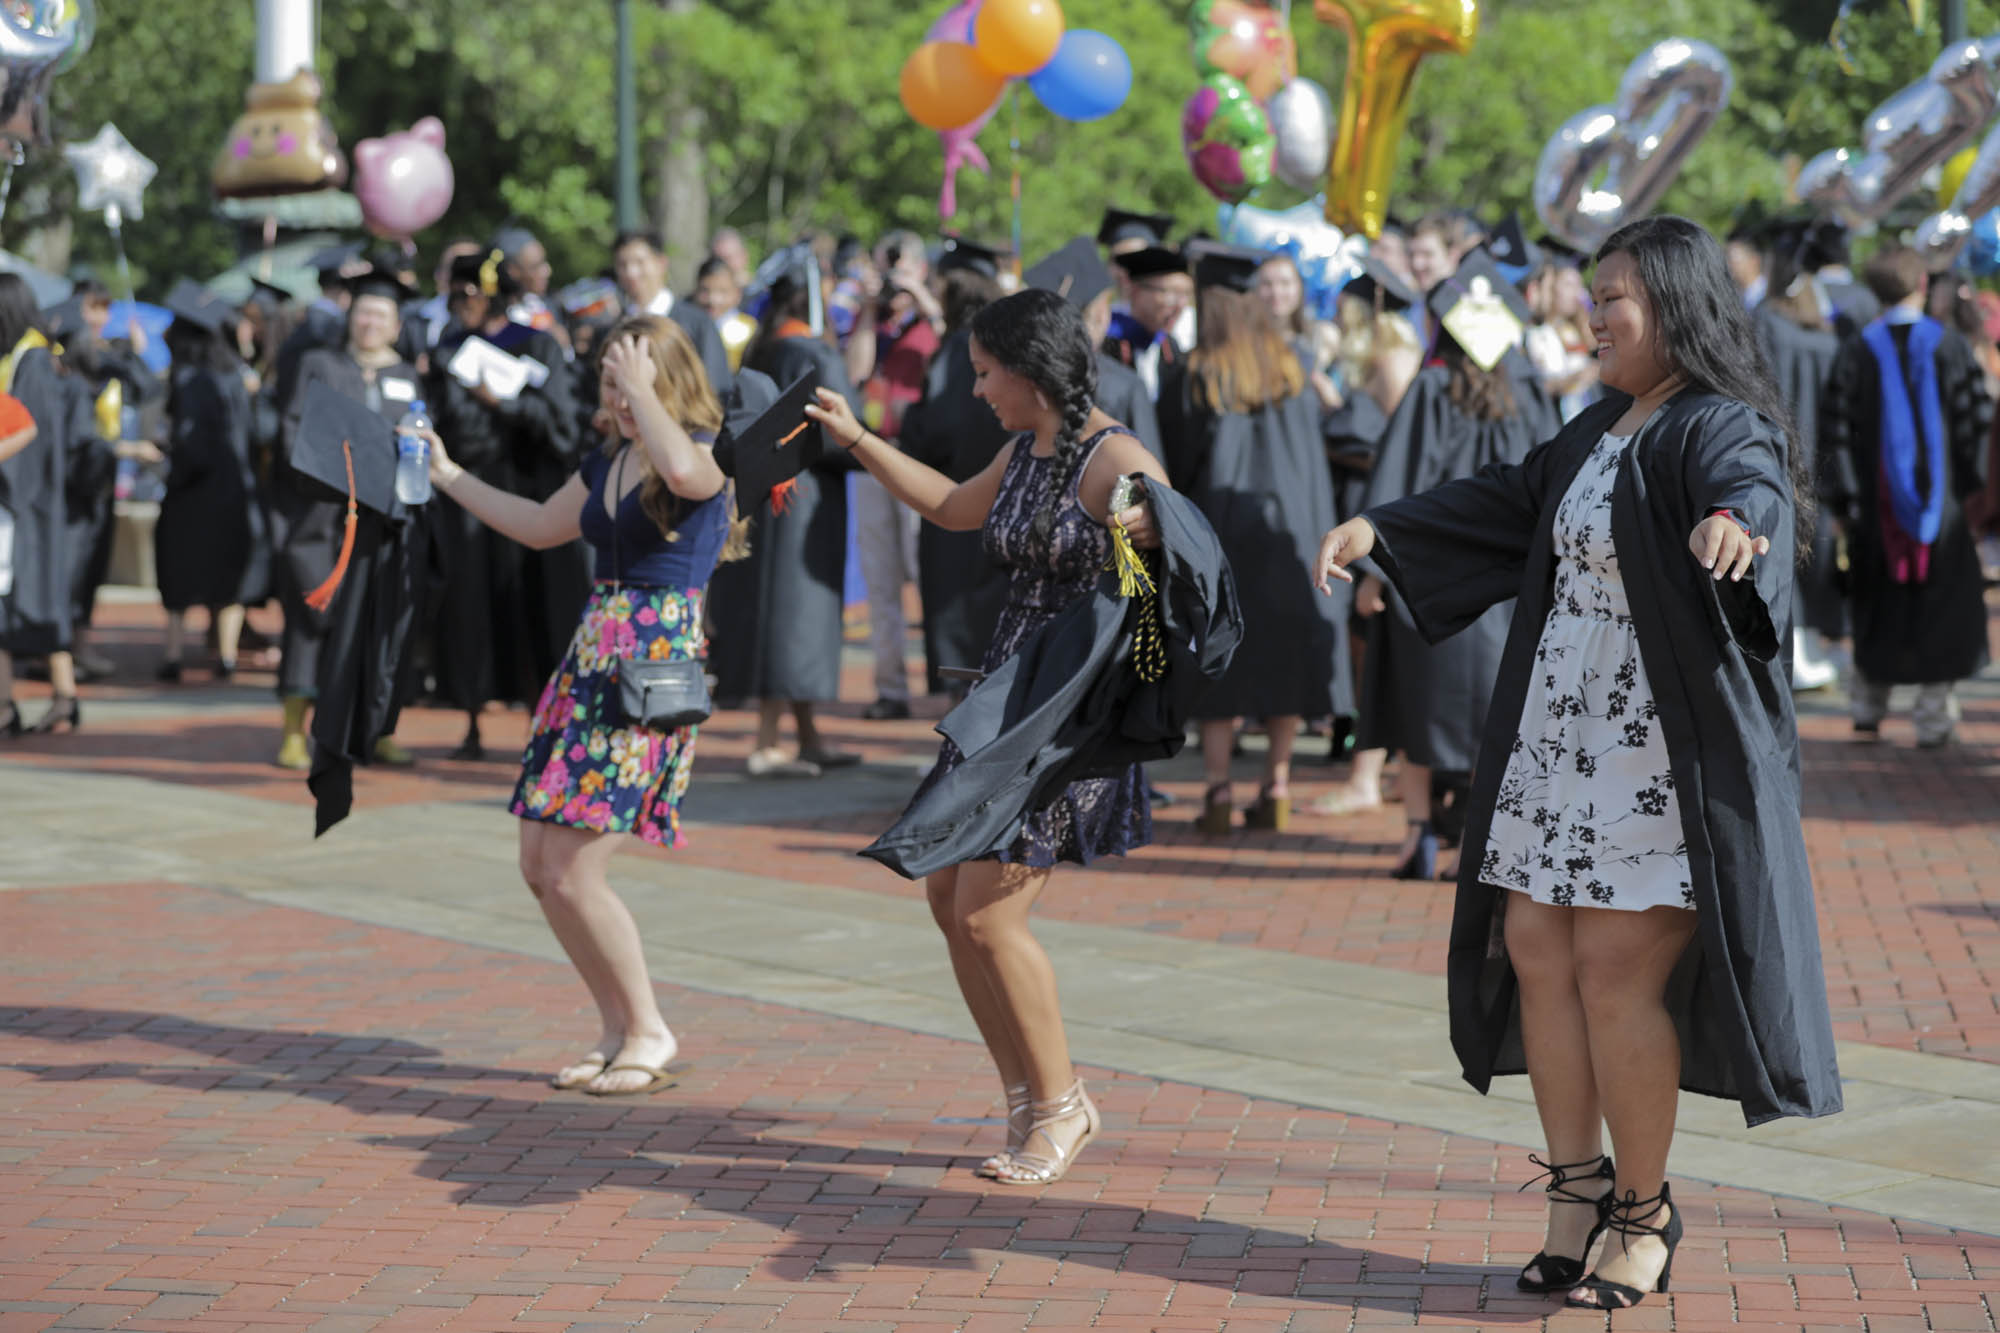 Graduates dancing